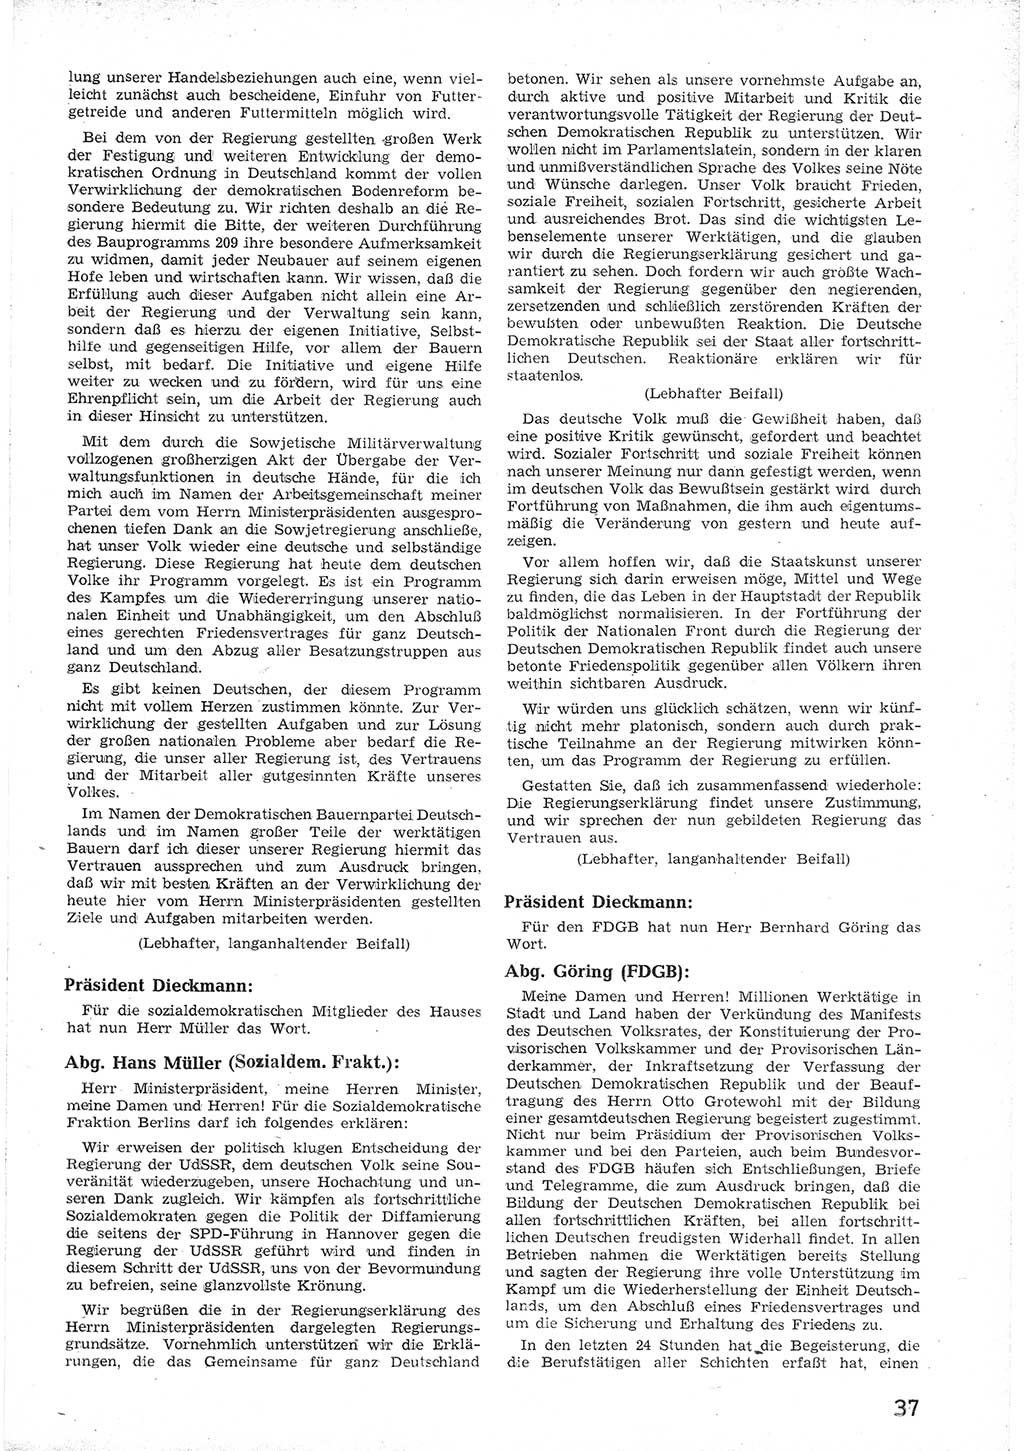 Provisorische Volkskammer (VK) der Deutschen Demokratischen Republik (DDR) 1949-1950, Dokument 49 (Prov. VK DDR 1949-1950, Dok. 49)